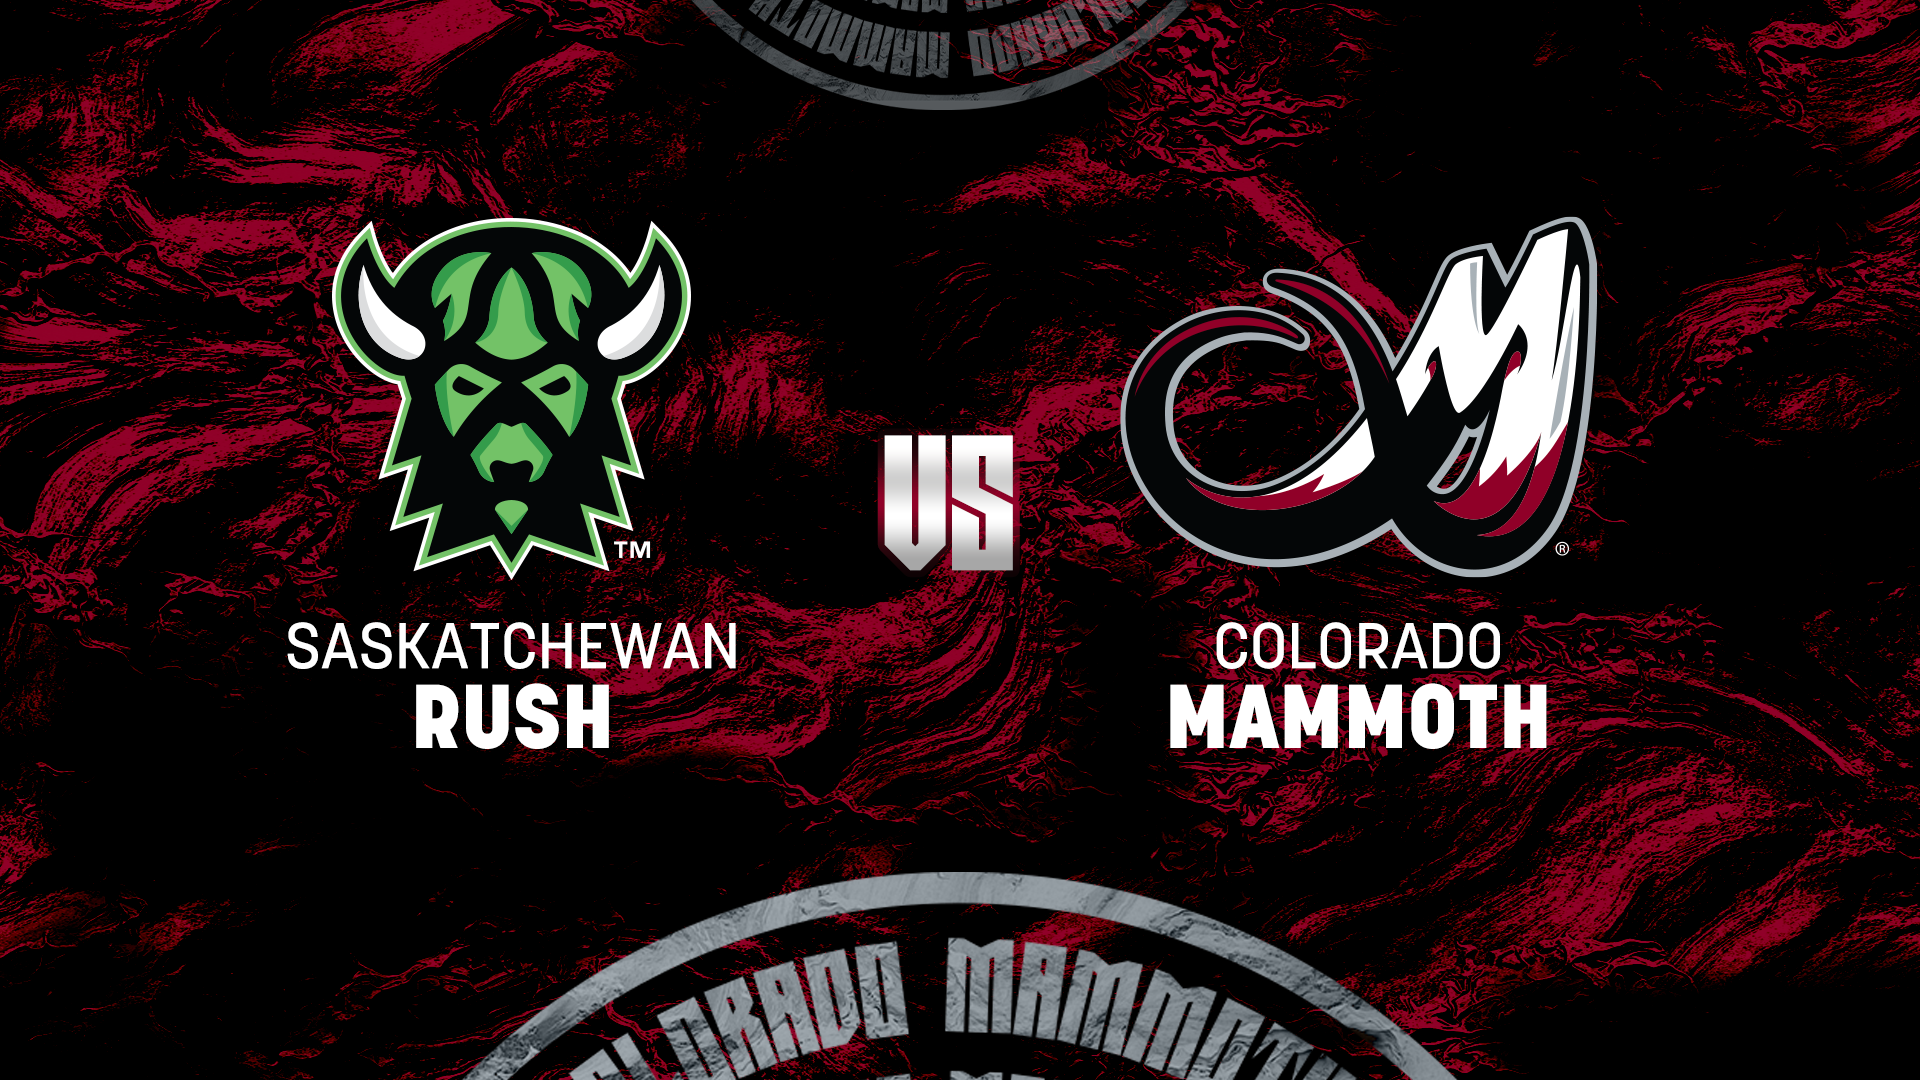 Rush vs. Mammoth matchup graphic